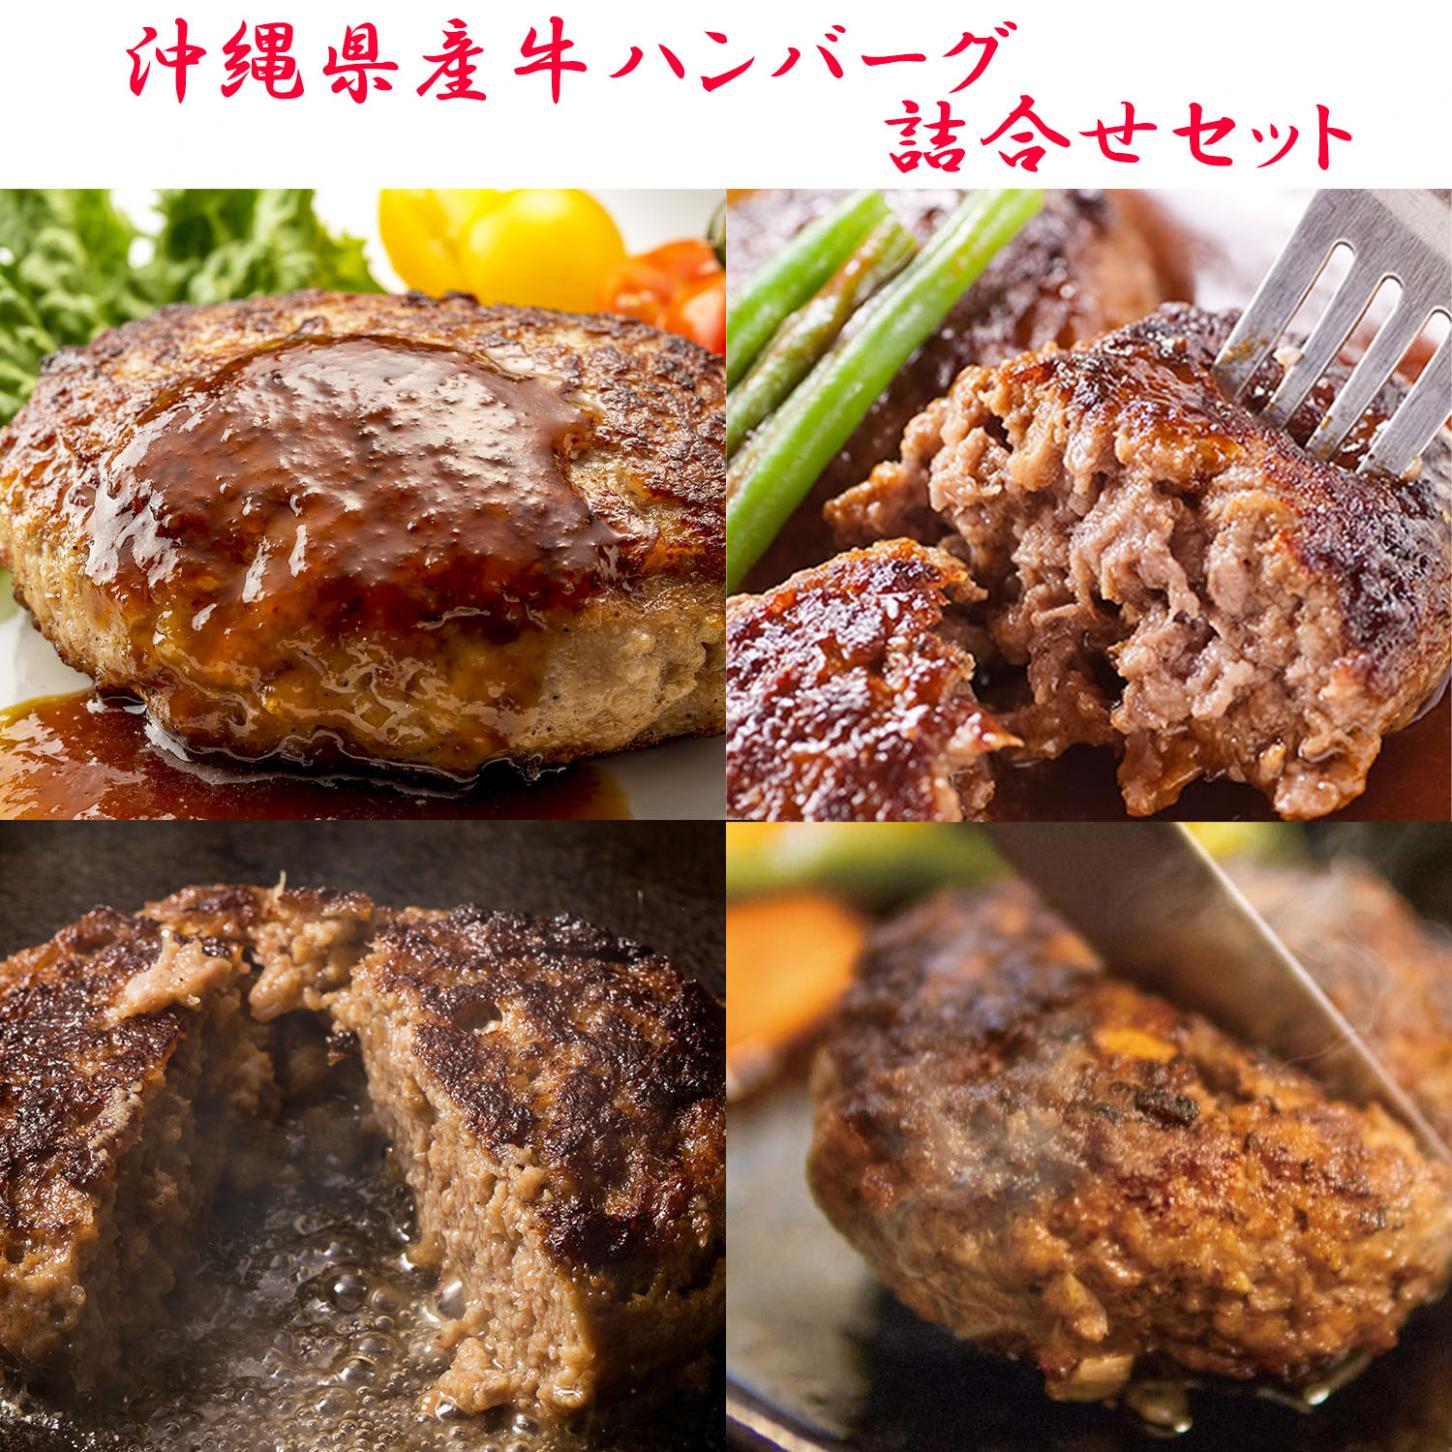 沖縄県産牛ハンバーグ詰合せセット(5個入・送料別途)